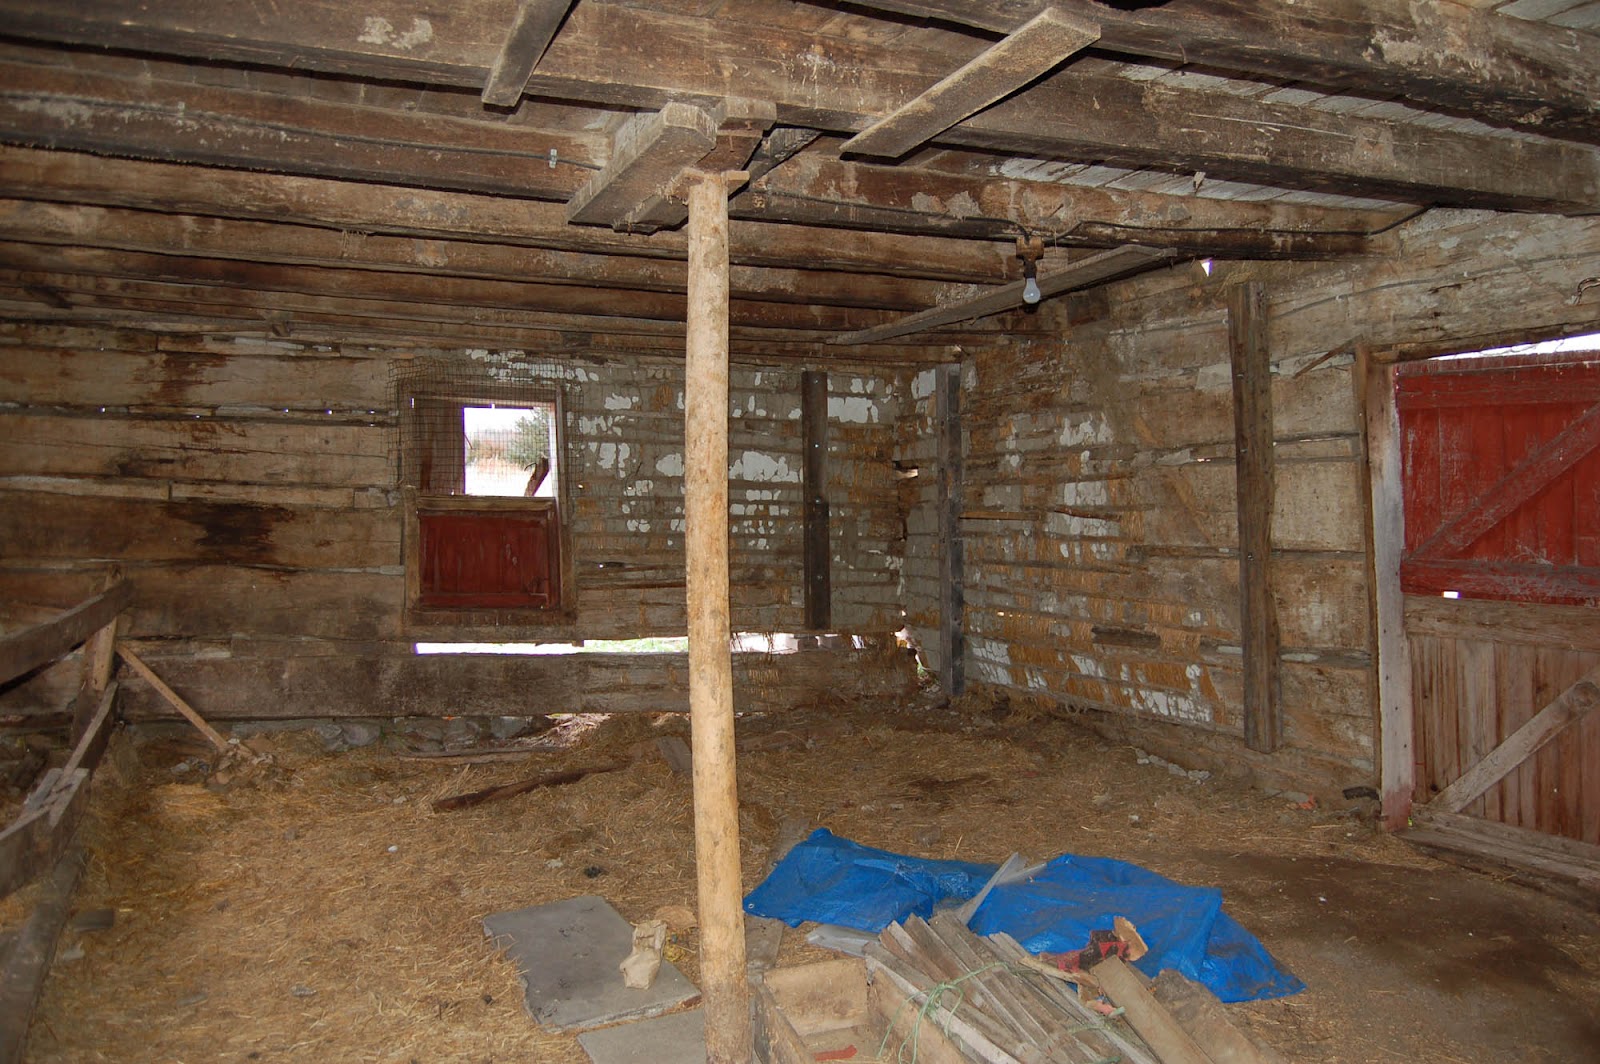 Cabin interior walls